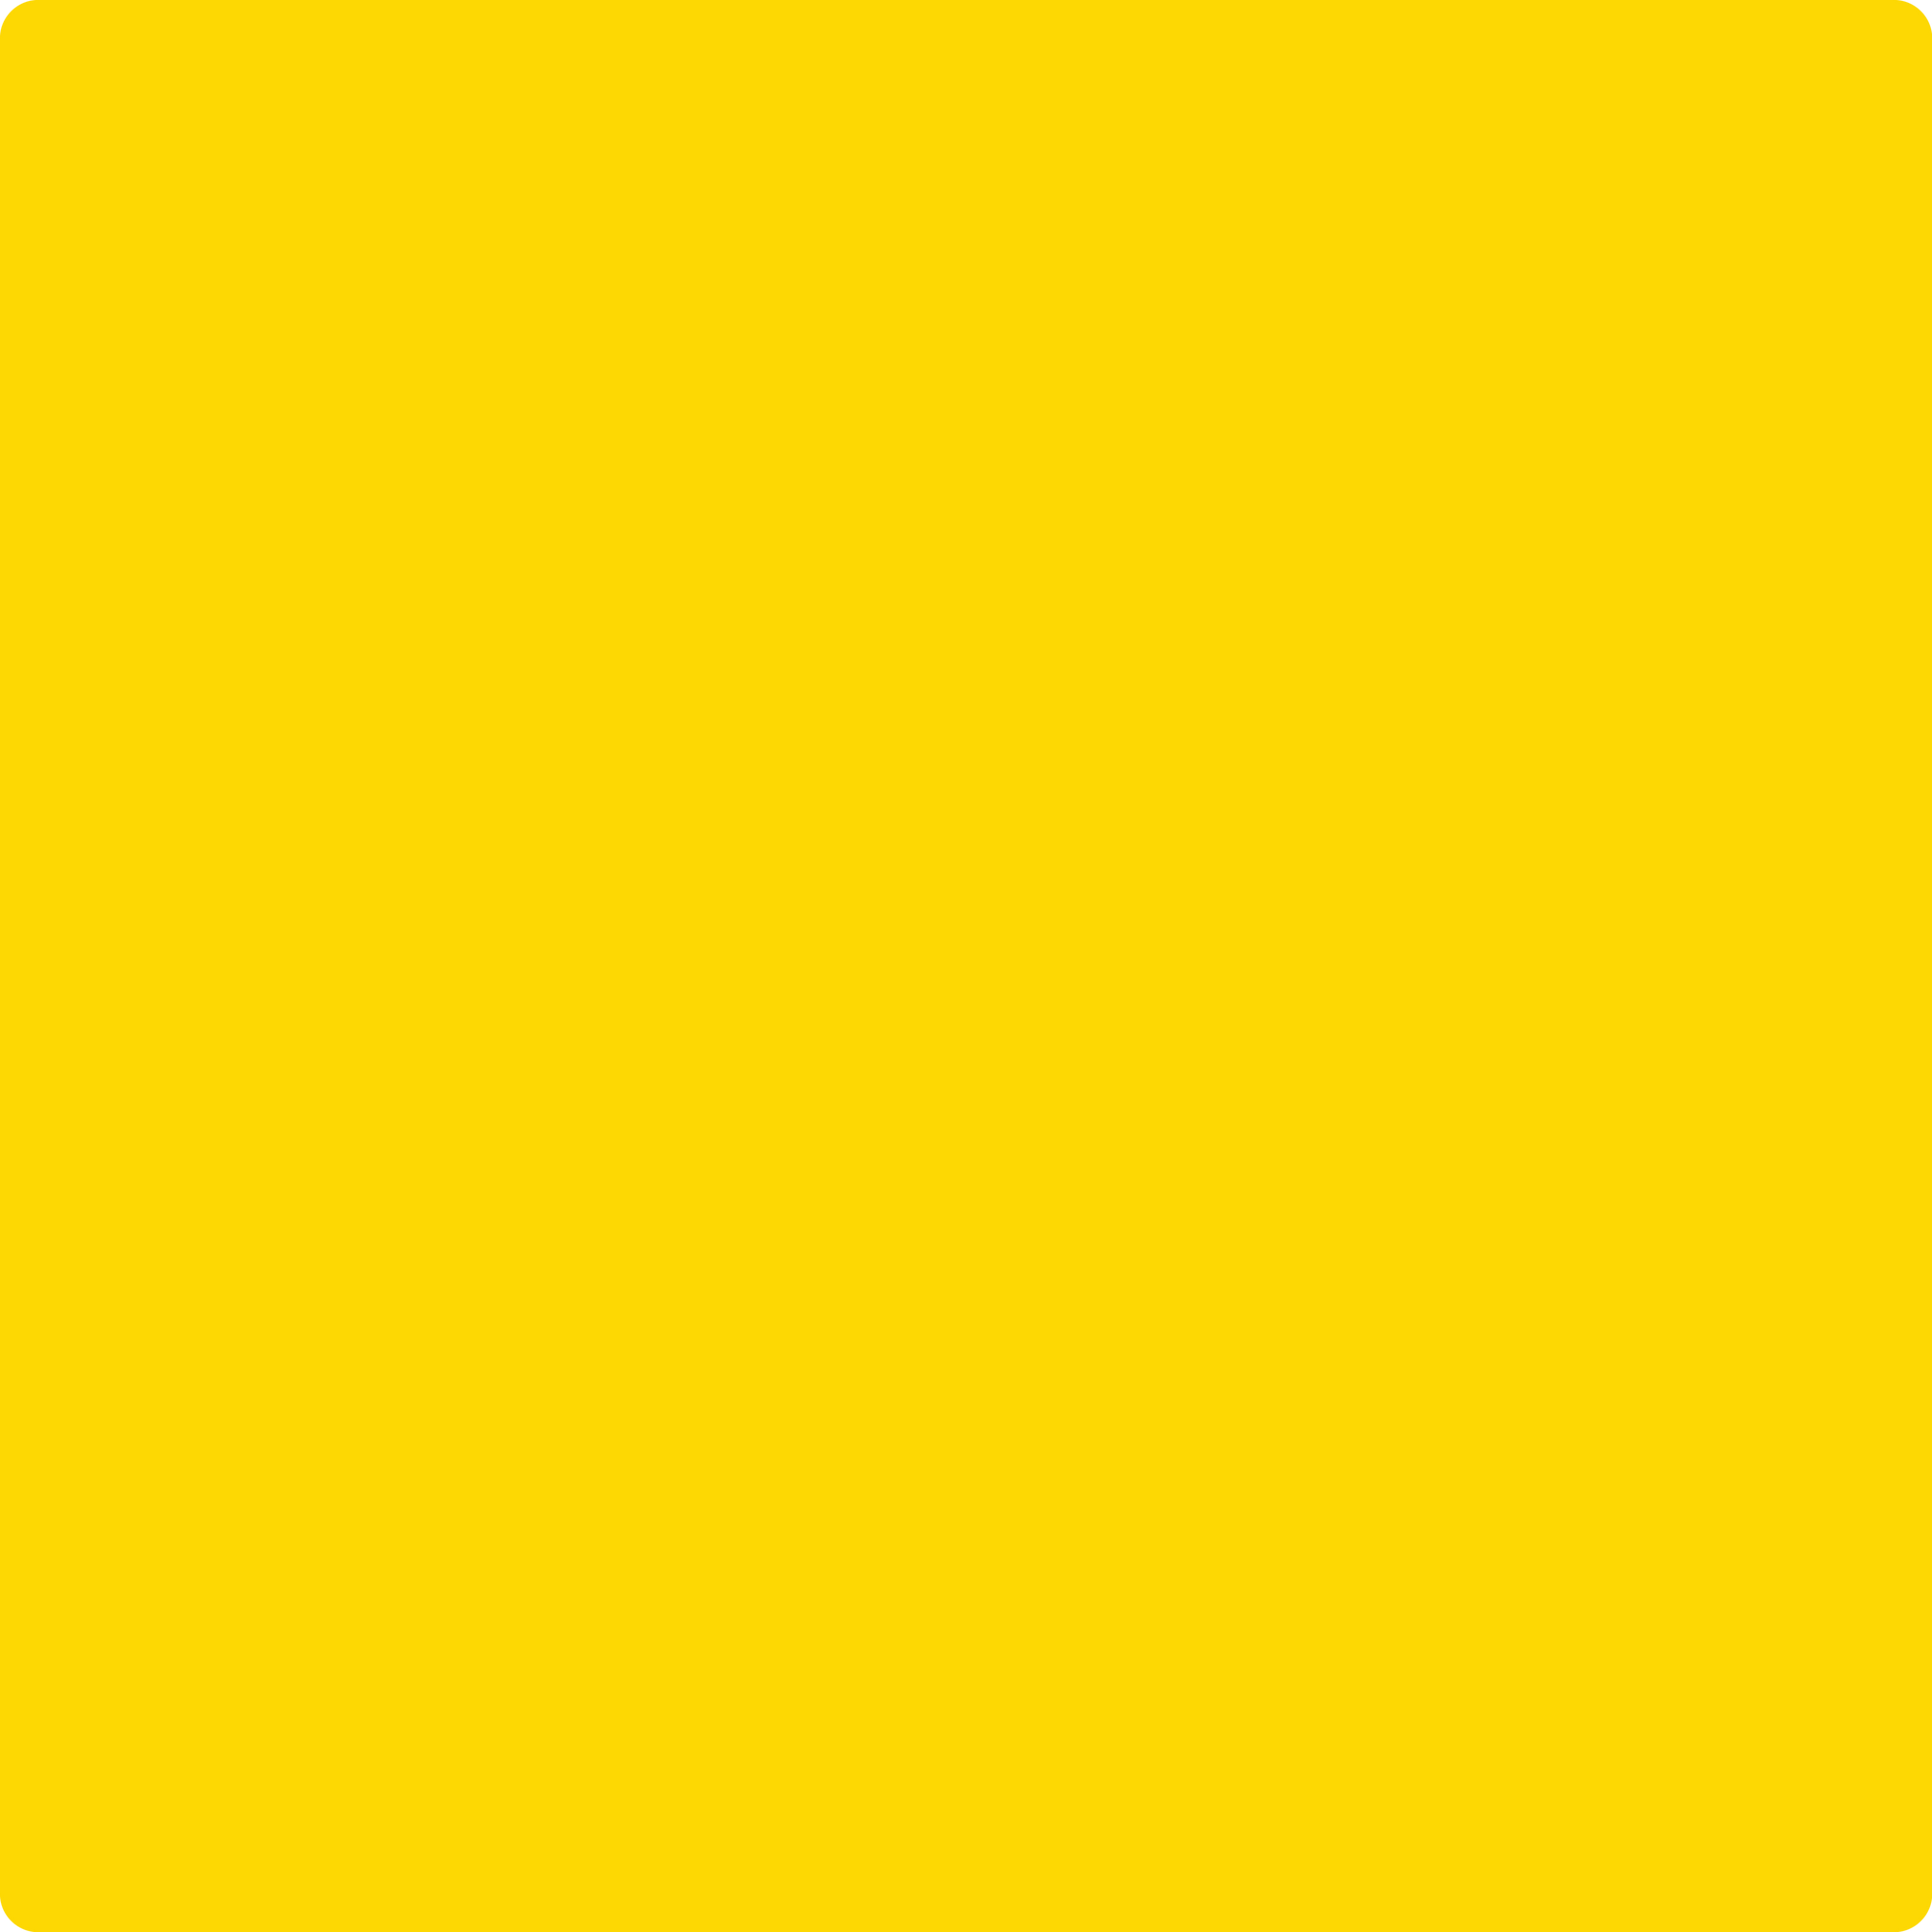 Shop Benajmin Moore's 2022-20 Sun Kissed Yellow at Aboff's in New York & Long Island. Long Island's favorite Benjamin Moore dealer.